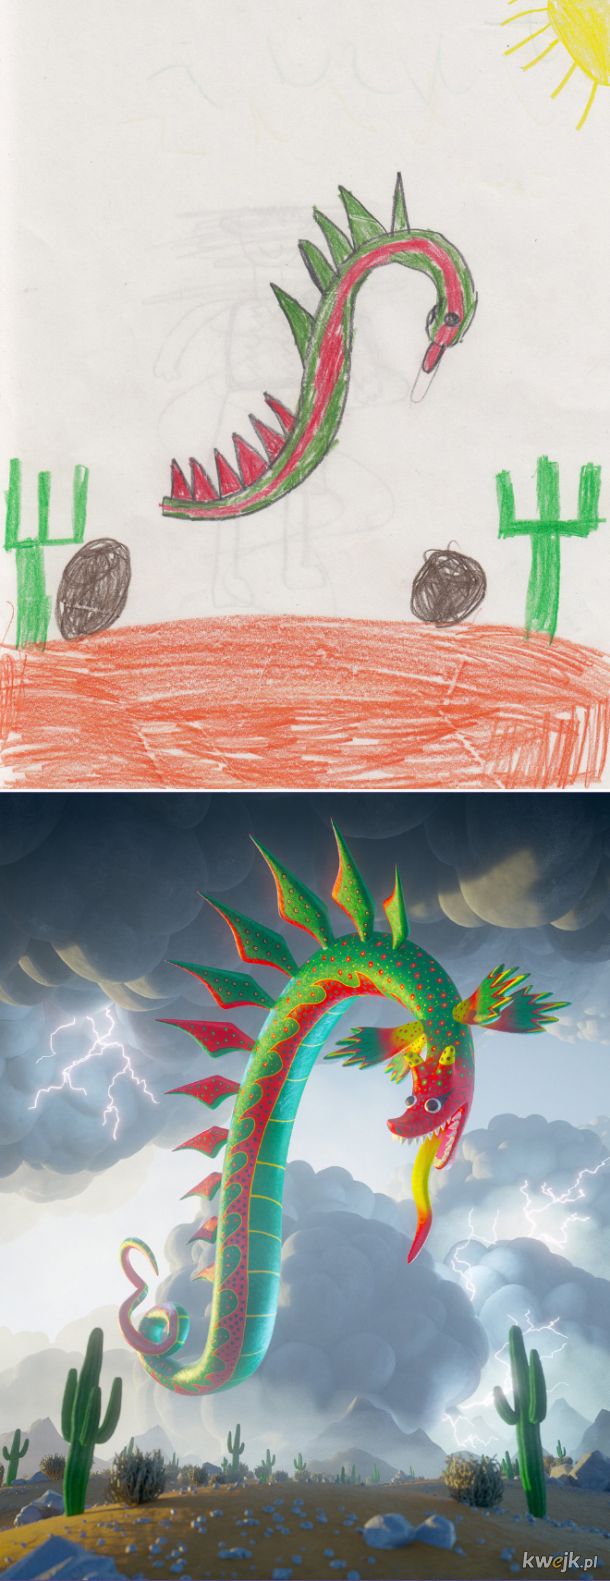 The Monster Project - artyści odtwarzają dziecięce rysunki potworów, obrazek 2